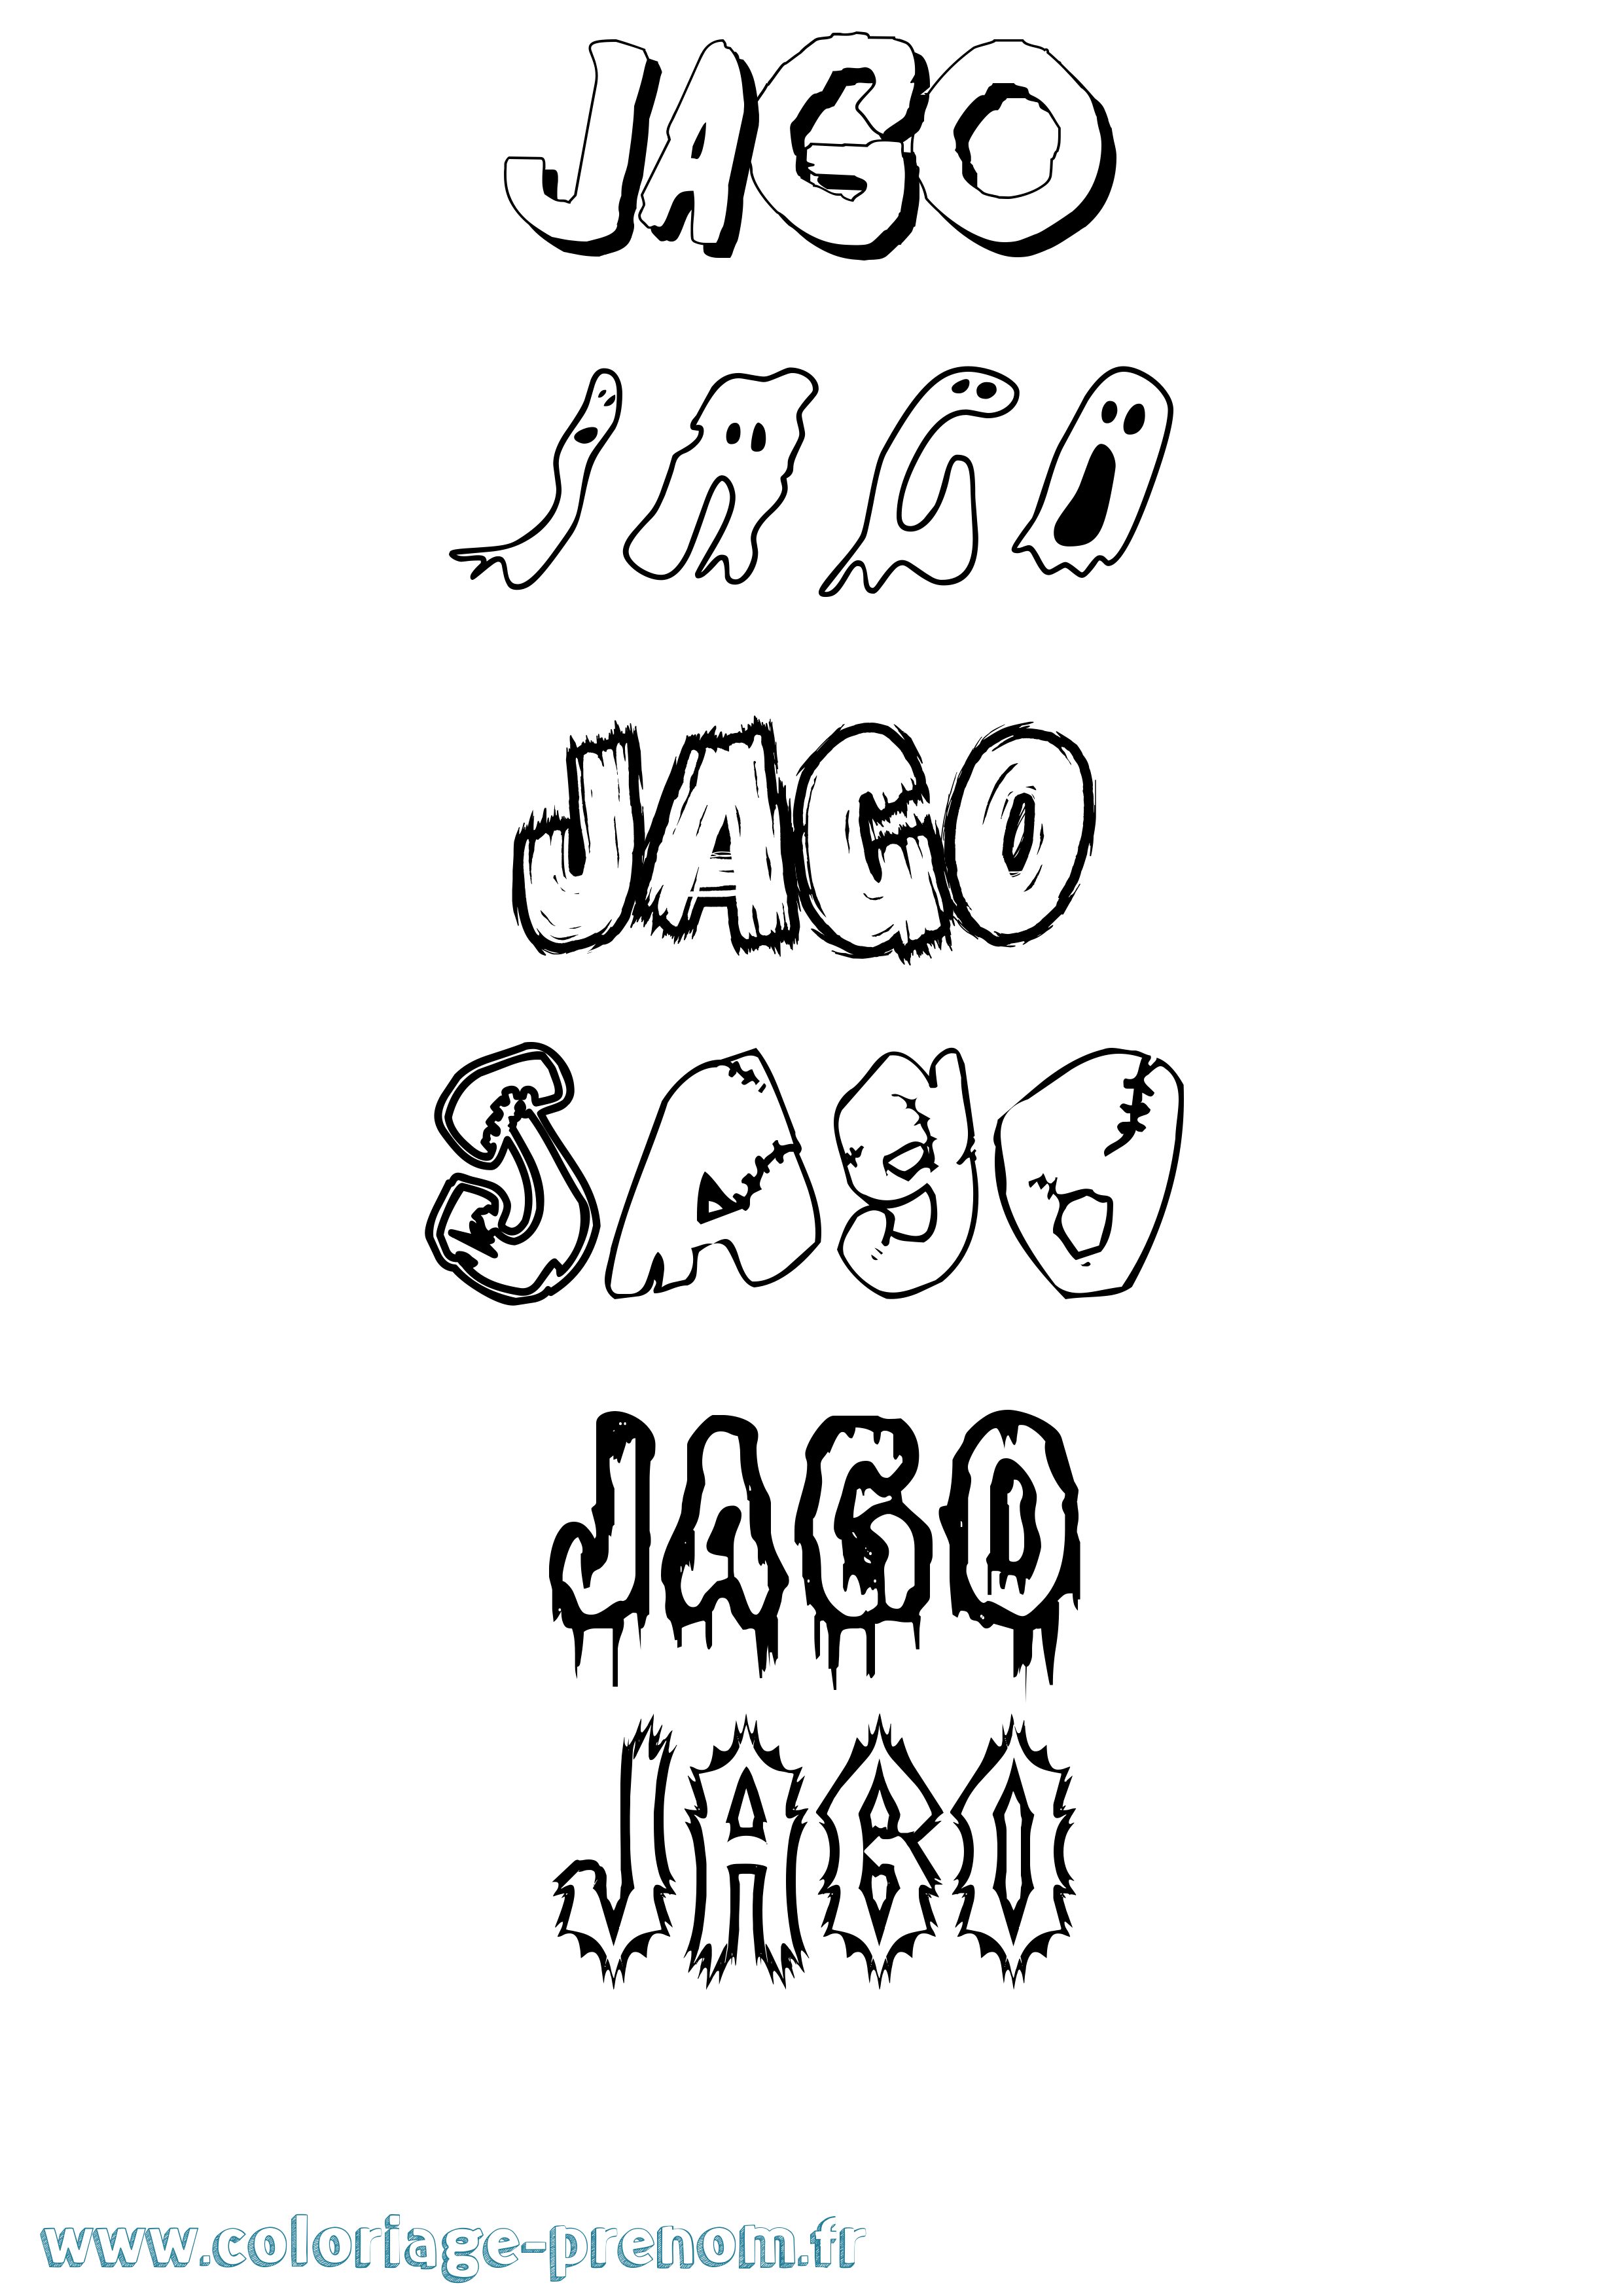 Coloriage prénom Jago Frisson